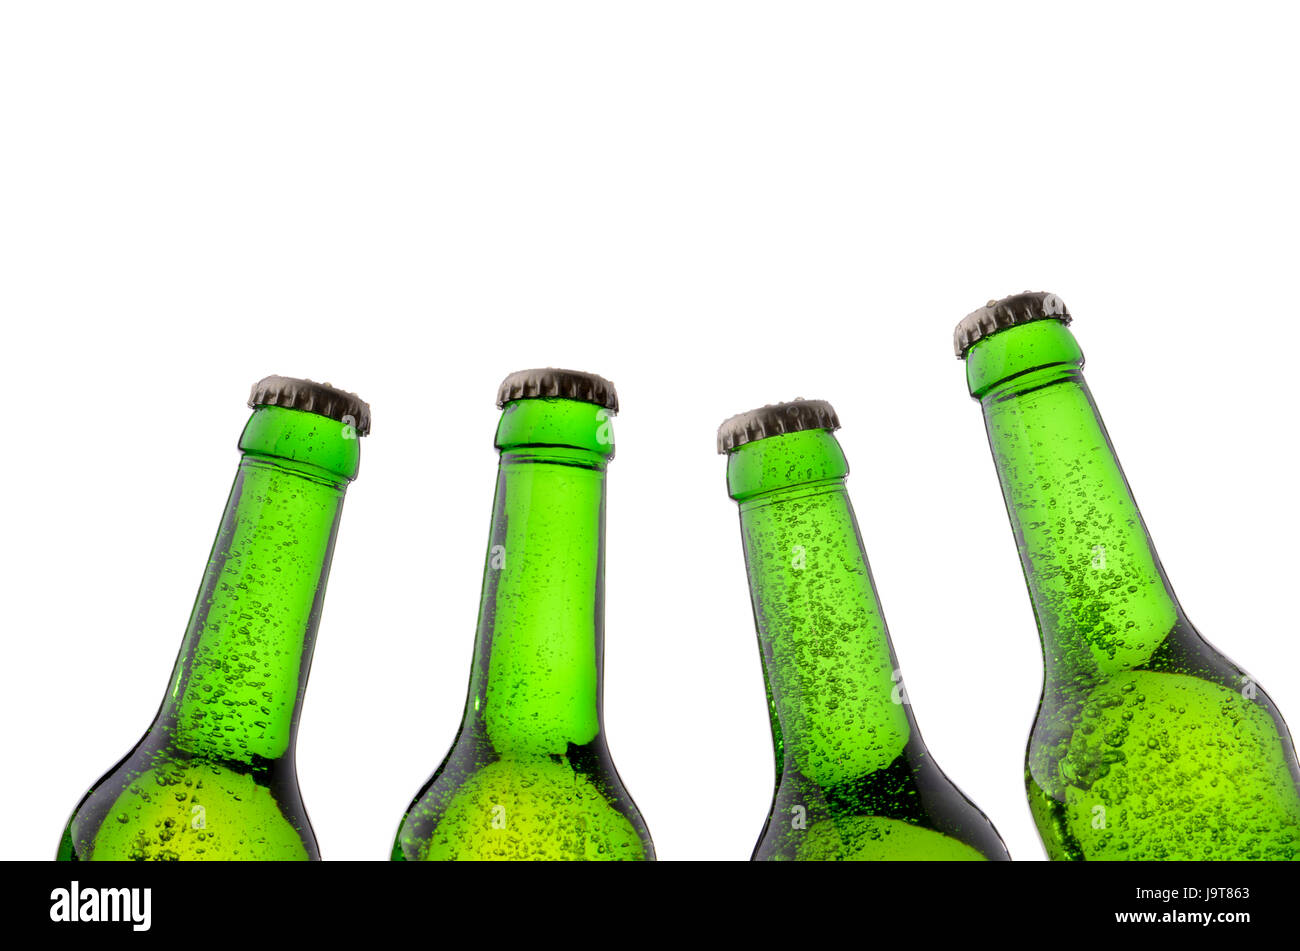 Bere acqua potabile, bavaglini, ristoro, birra, bottiglia, rinfrescanti, fresche, verde Foto Stock